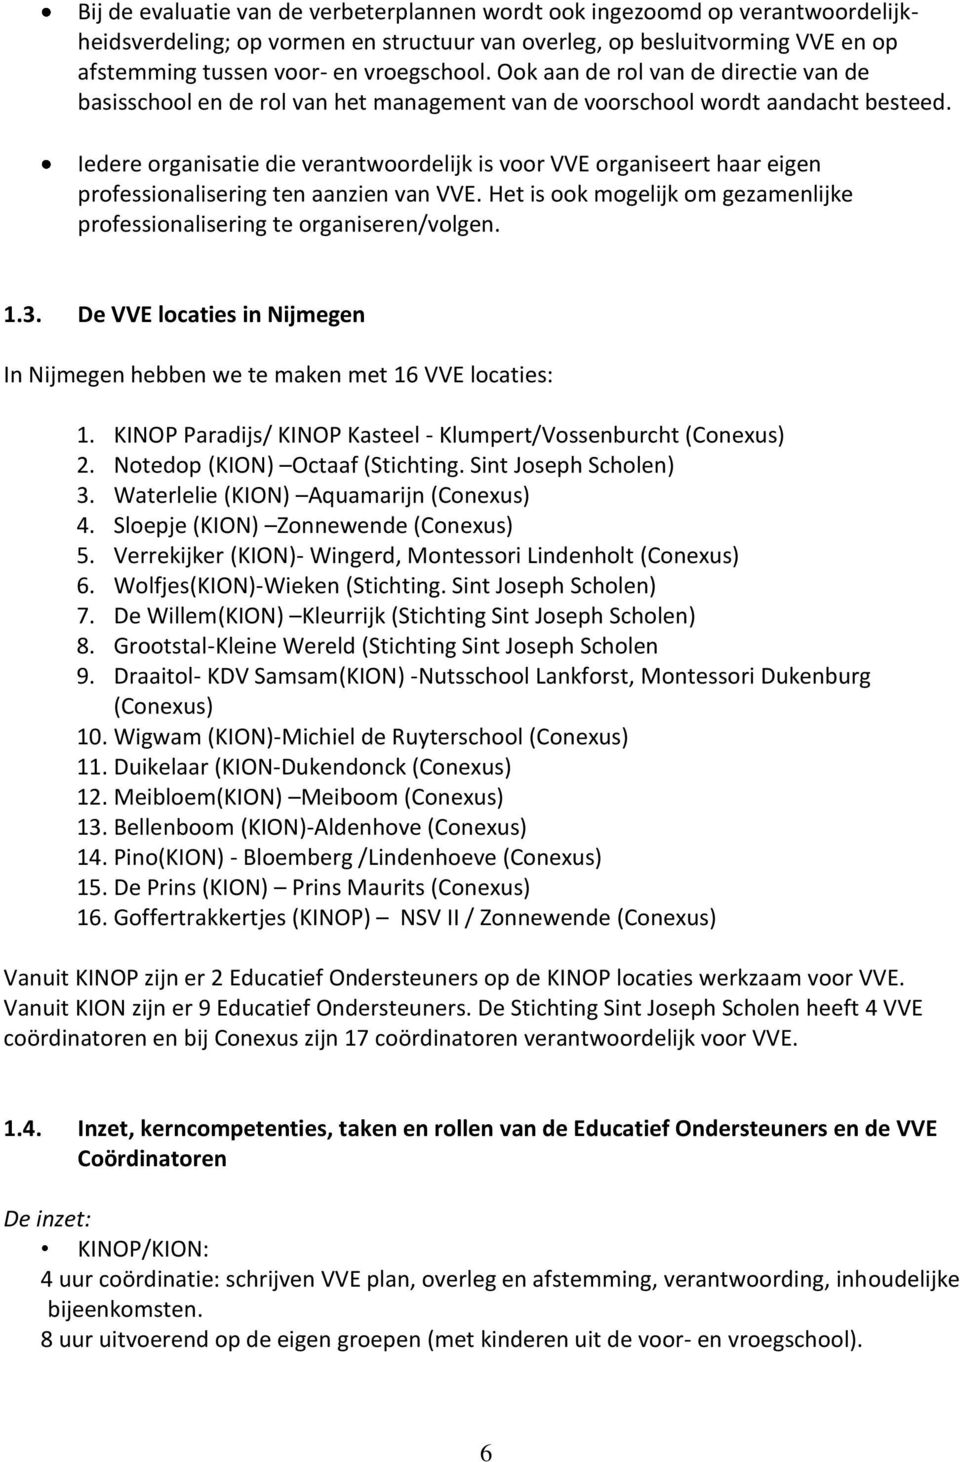 Iedere organisatie die verantwoordelijk is voor VVE organiseert haar eigen professionalisering ten aanzien van VVE. Het is ook mogelijk om gezamenlijke professionalisering te organiseren/volgen. 1.3.